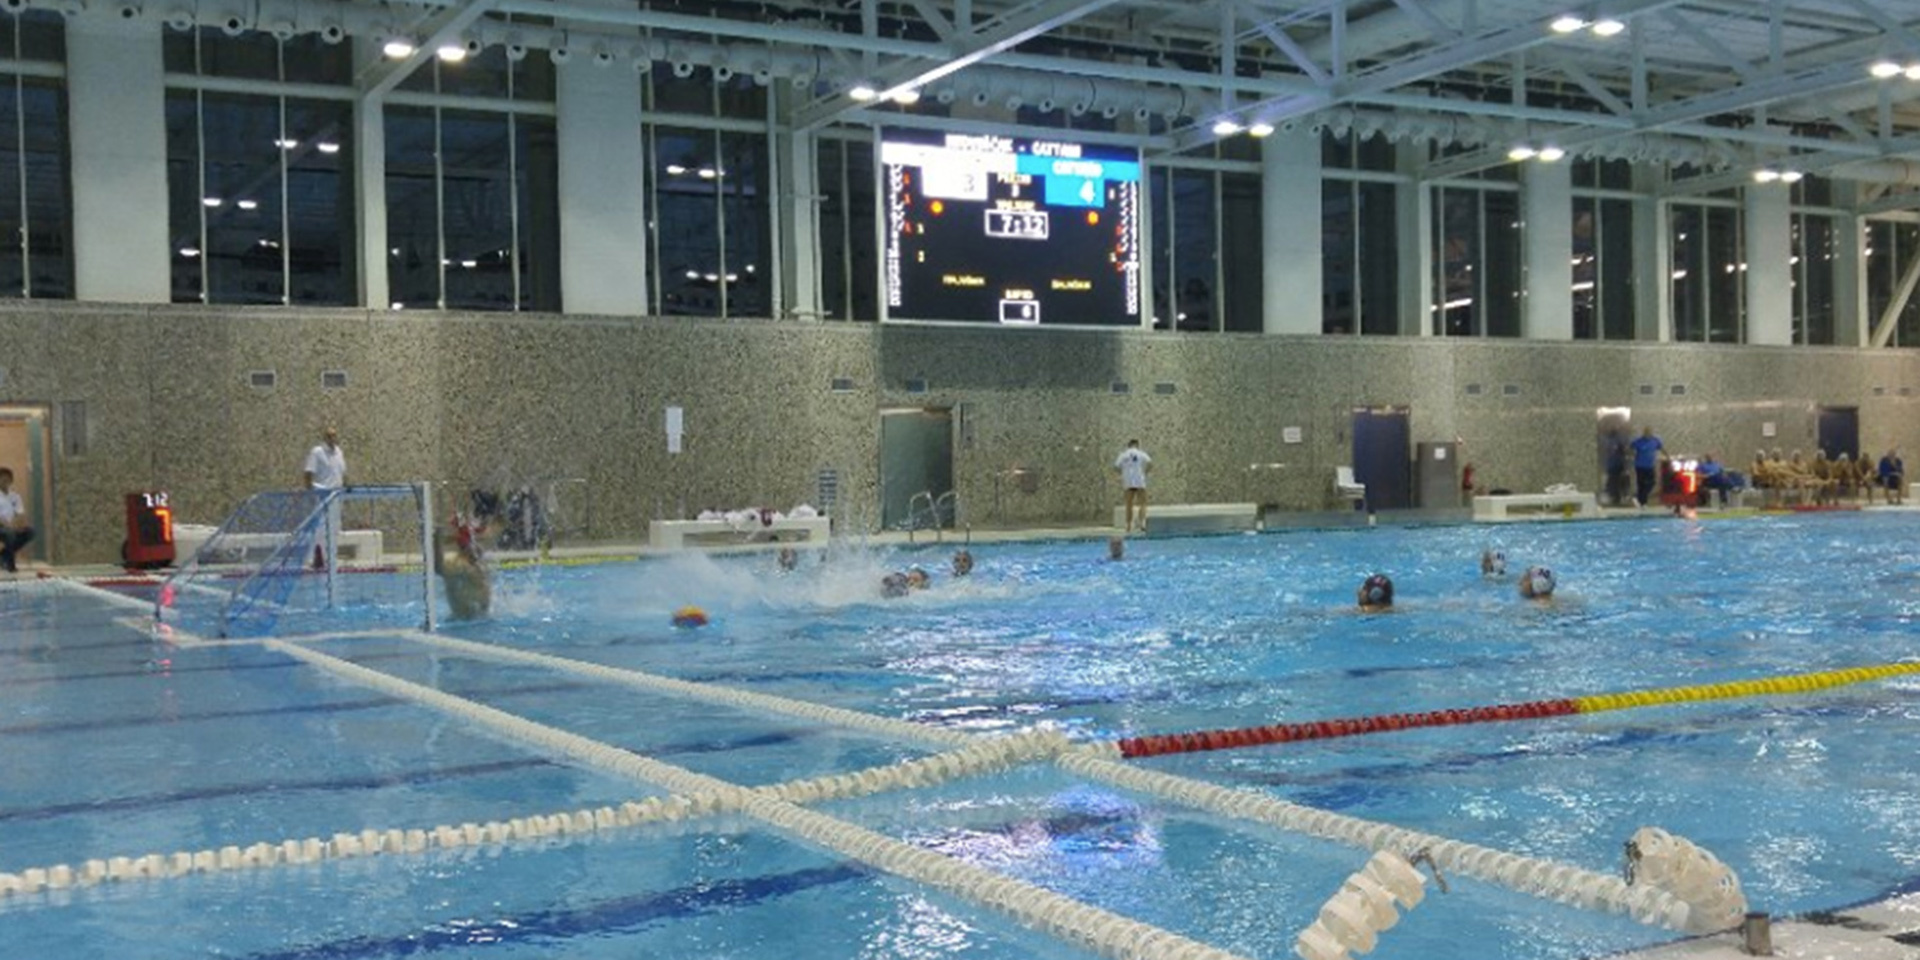 Swimming Pool Scoreboard LED Display Screen in Croatia